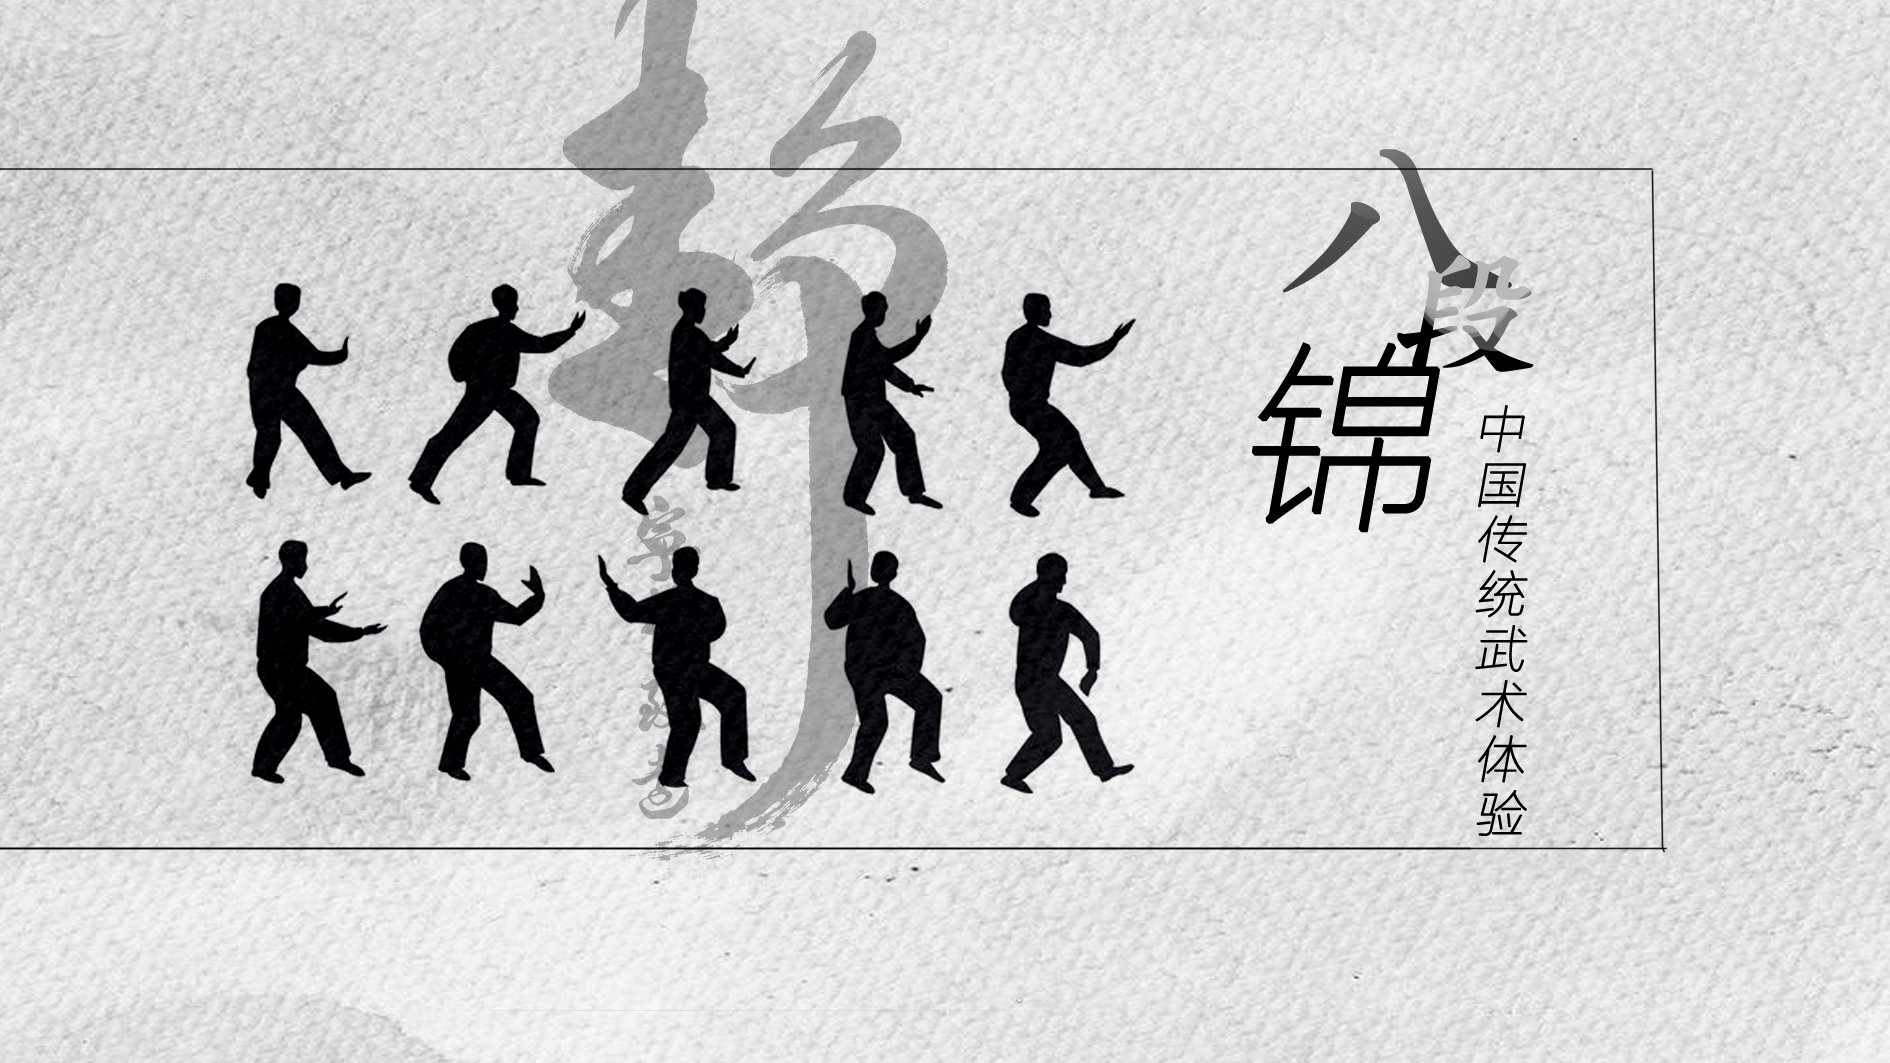 Traditional Chinese martial art：Ba Duan Jin